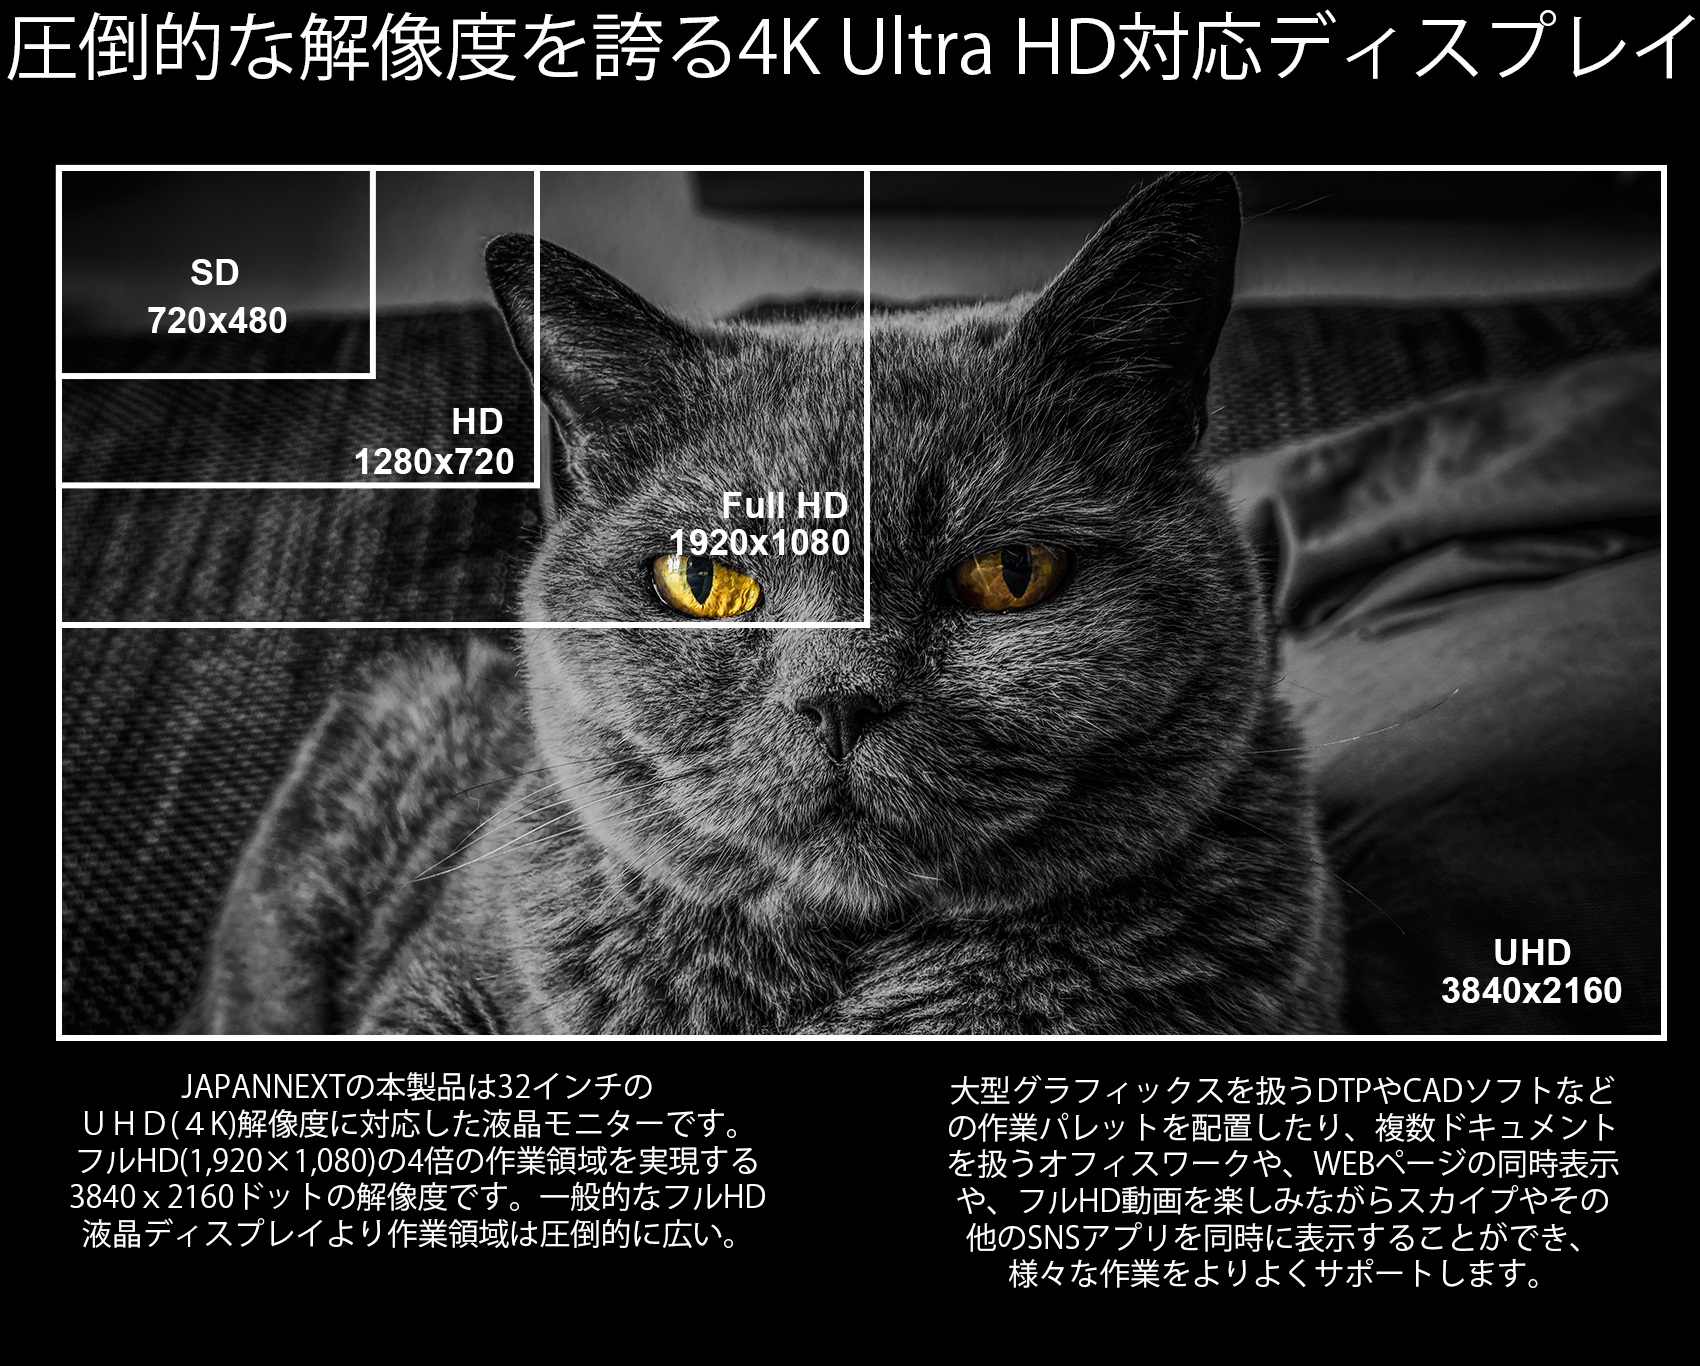 JAPANNEXT「JN-IPS320CUHDR」は32インチのUHD（4K）解像度に対応した液晶ディスプレイです。フルHD（1920×1080）の4倍の作業領域を実現する3840ｘ2160ドットの解像度です。一般的なフルHD液晶ディスプレイより作業領域は圧倒的に広い。例えば、フルHD動画を同時に4つ表示可能です。4K（3840×2160ドット）対応の圧倒的な解像度を誇り、広域表示に対応することで作業効率を大幅に向上できます。大型グラフィックスを扱うDTPやCADソフトなどの作業パレットを配置したり、複数ドキュメントを扱うオフィスワークや、WEBページの同時表示や、フルHD動画を楽しみながらスカイプやその他のSNSアプリを同時に表示することができ、様々な作業をよりよくサポートします。